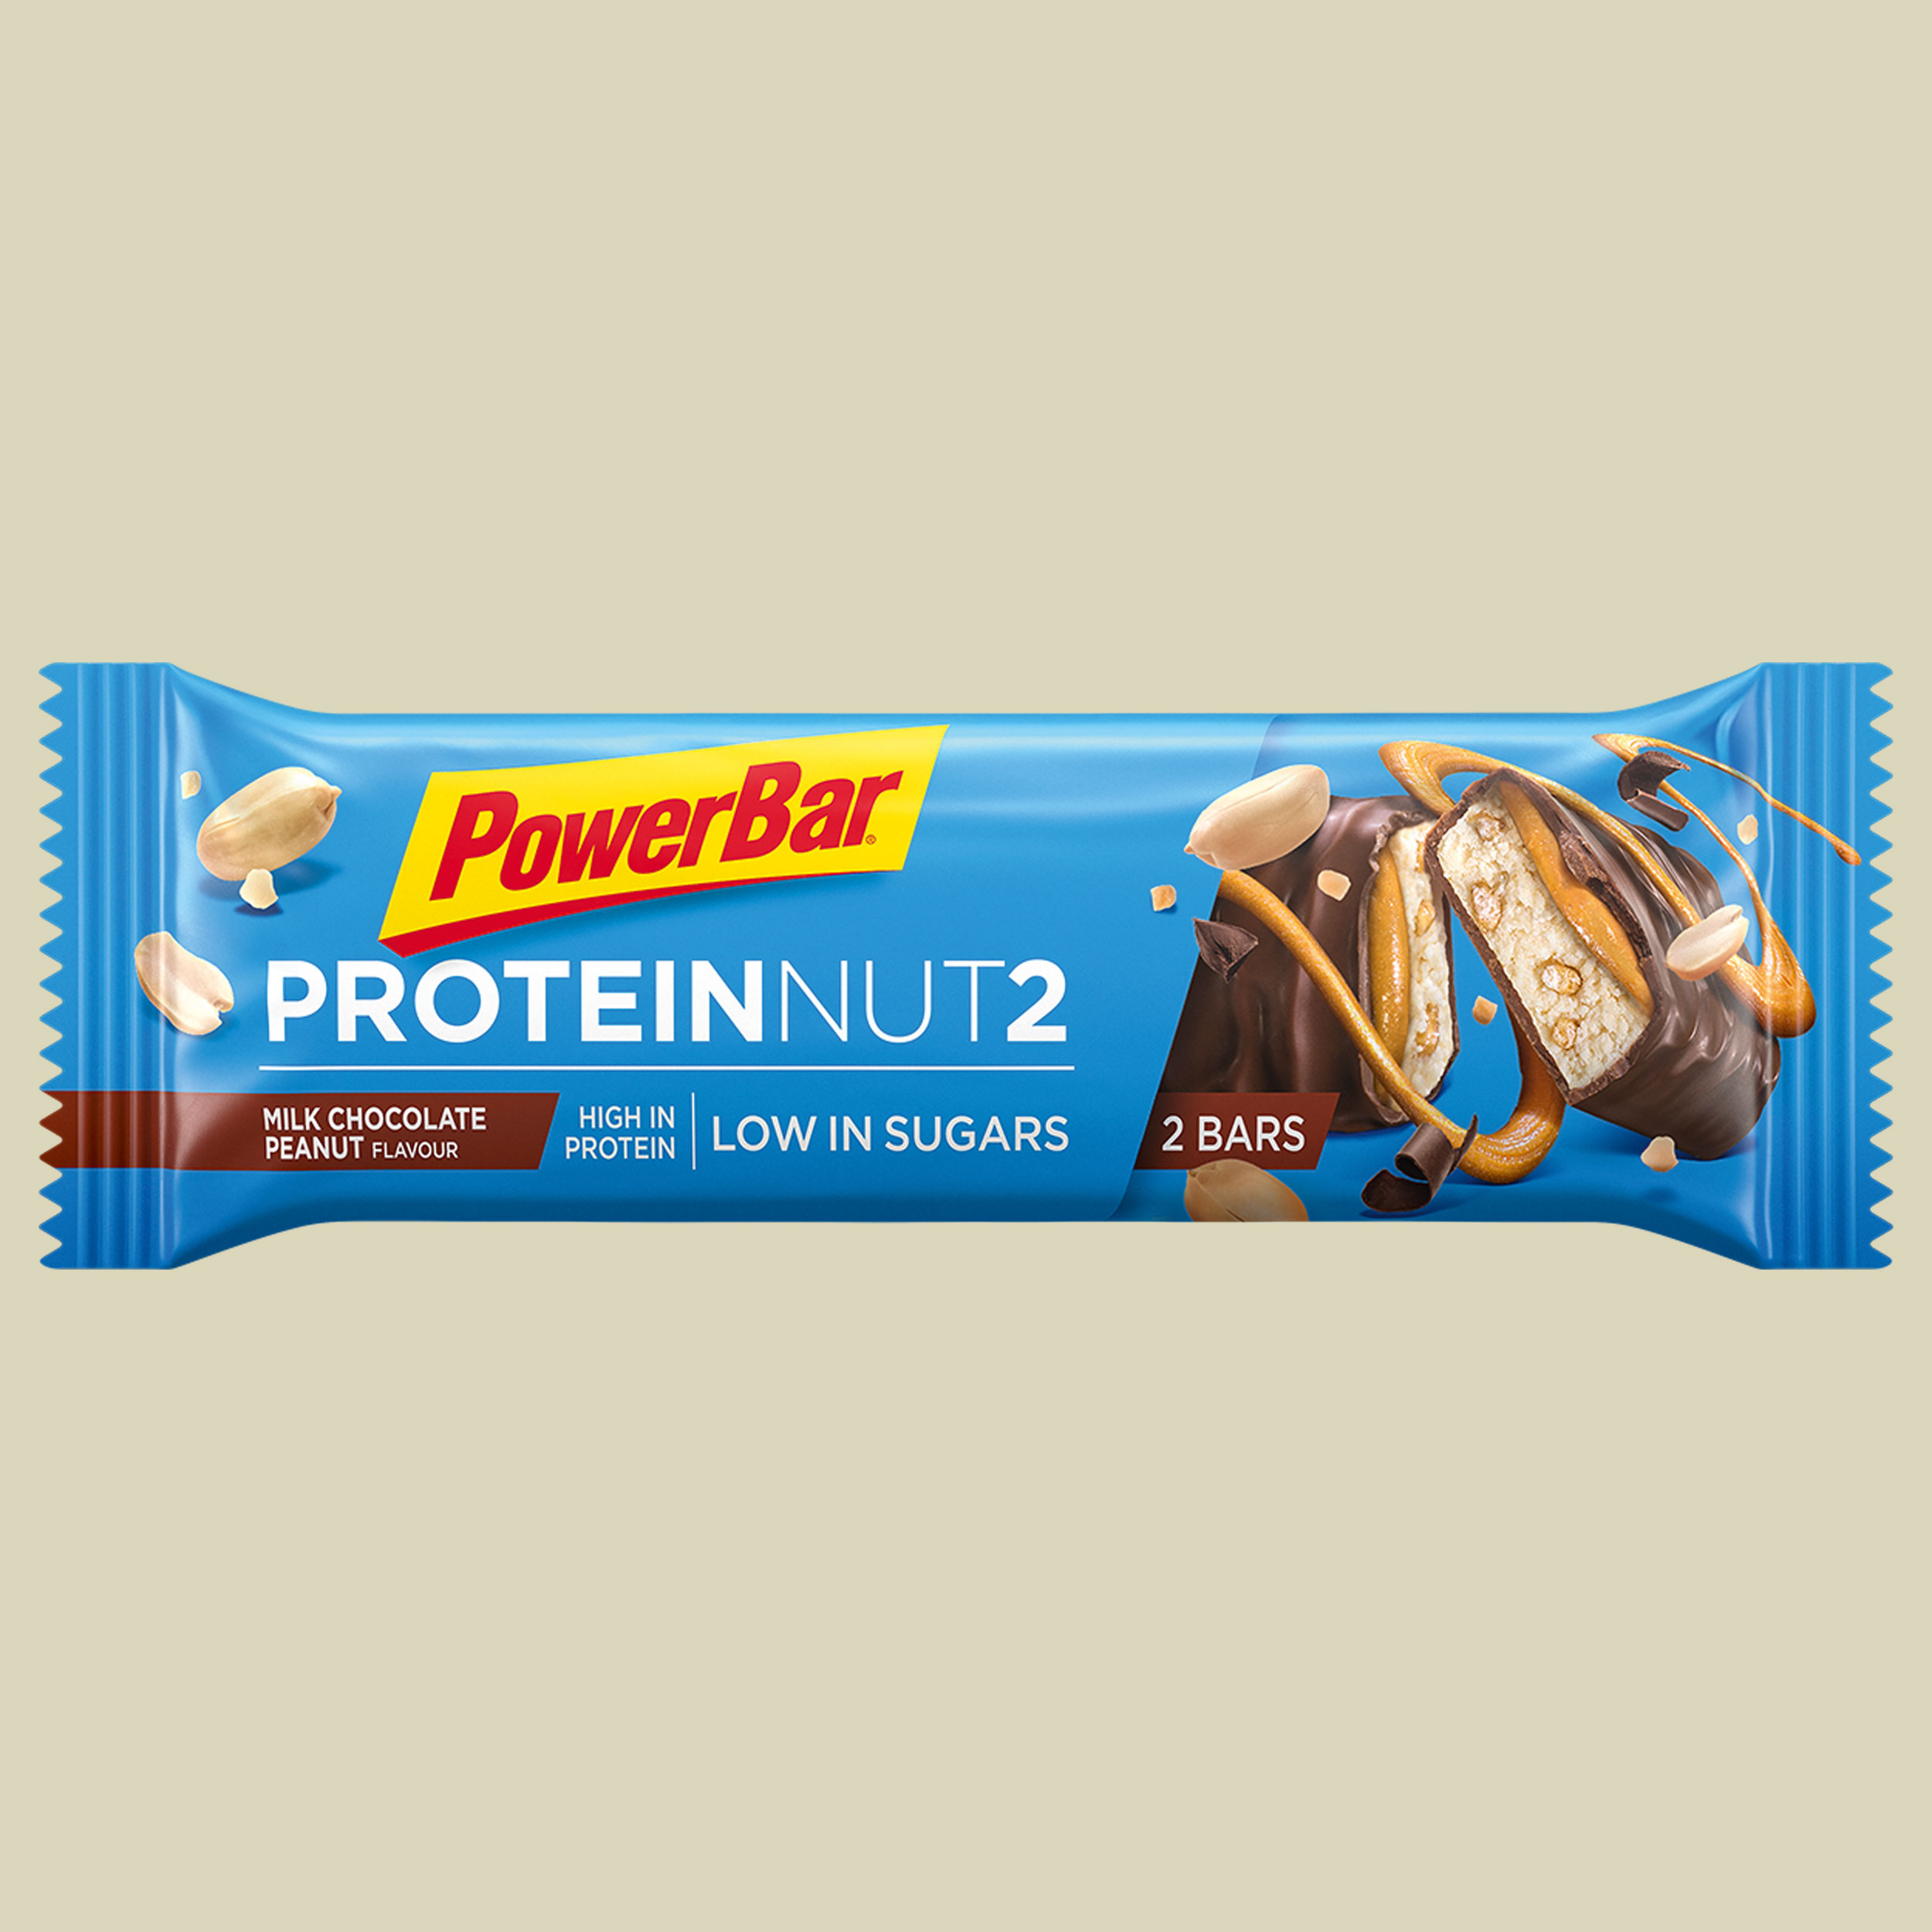 Protein Nut2 35g Geschmack milk chocolate peanut